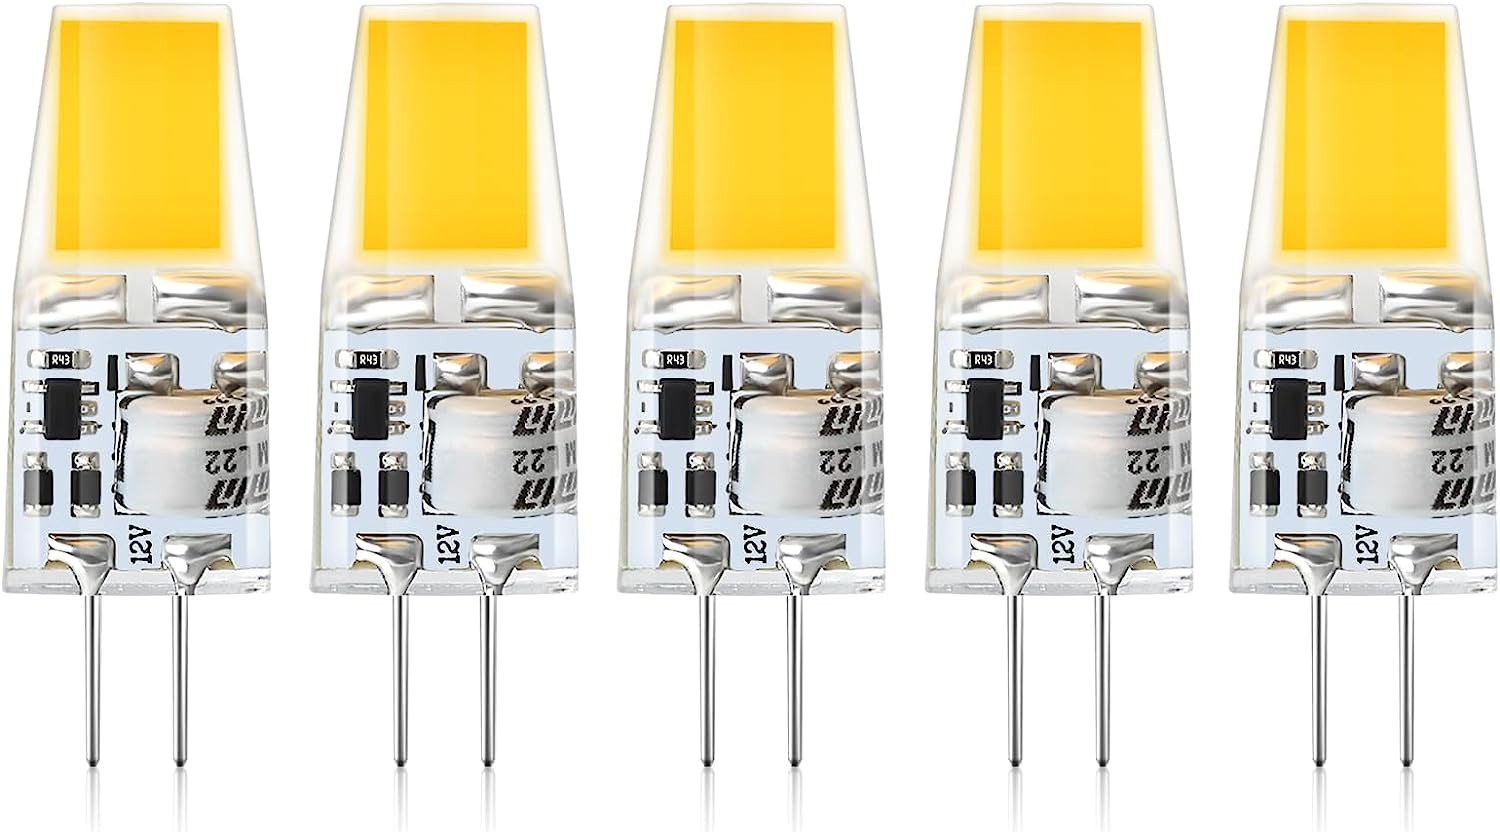 DOPWii LED-Leuchtmittel 5er-Pack G4LED Lampen,2W G4 LED Birnen 12V,Warmweiß 3000K, 240 LM, 5 St.